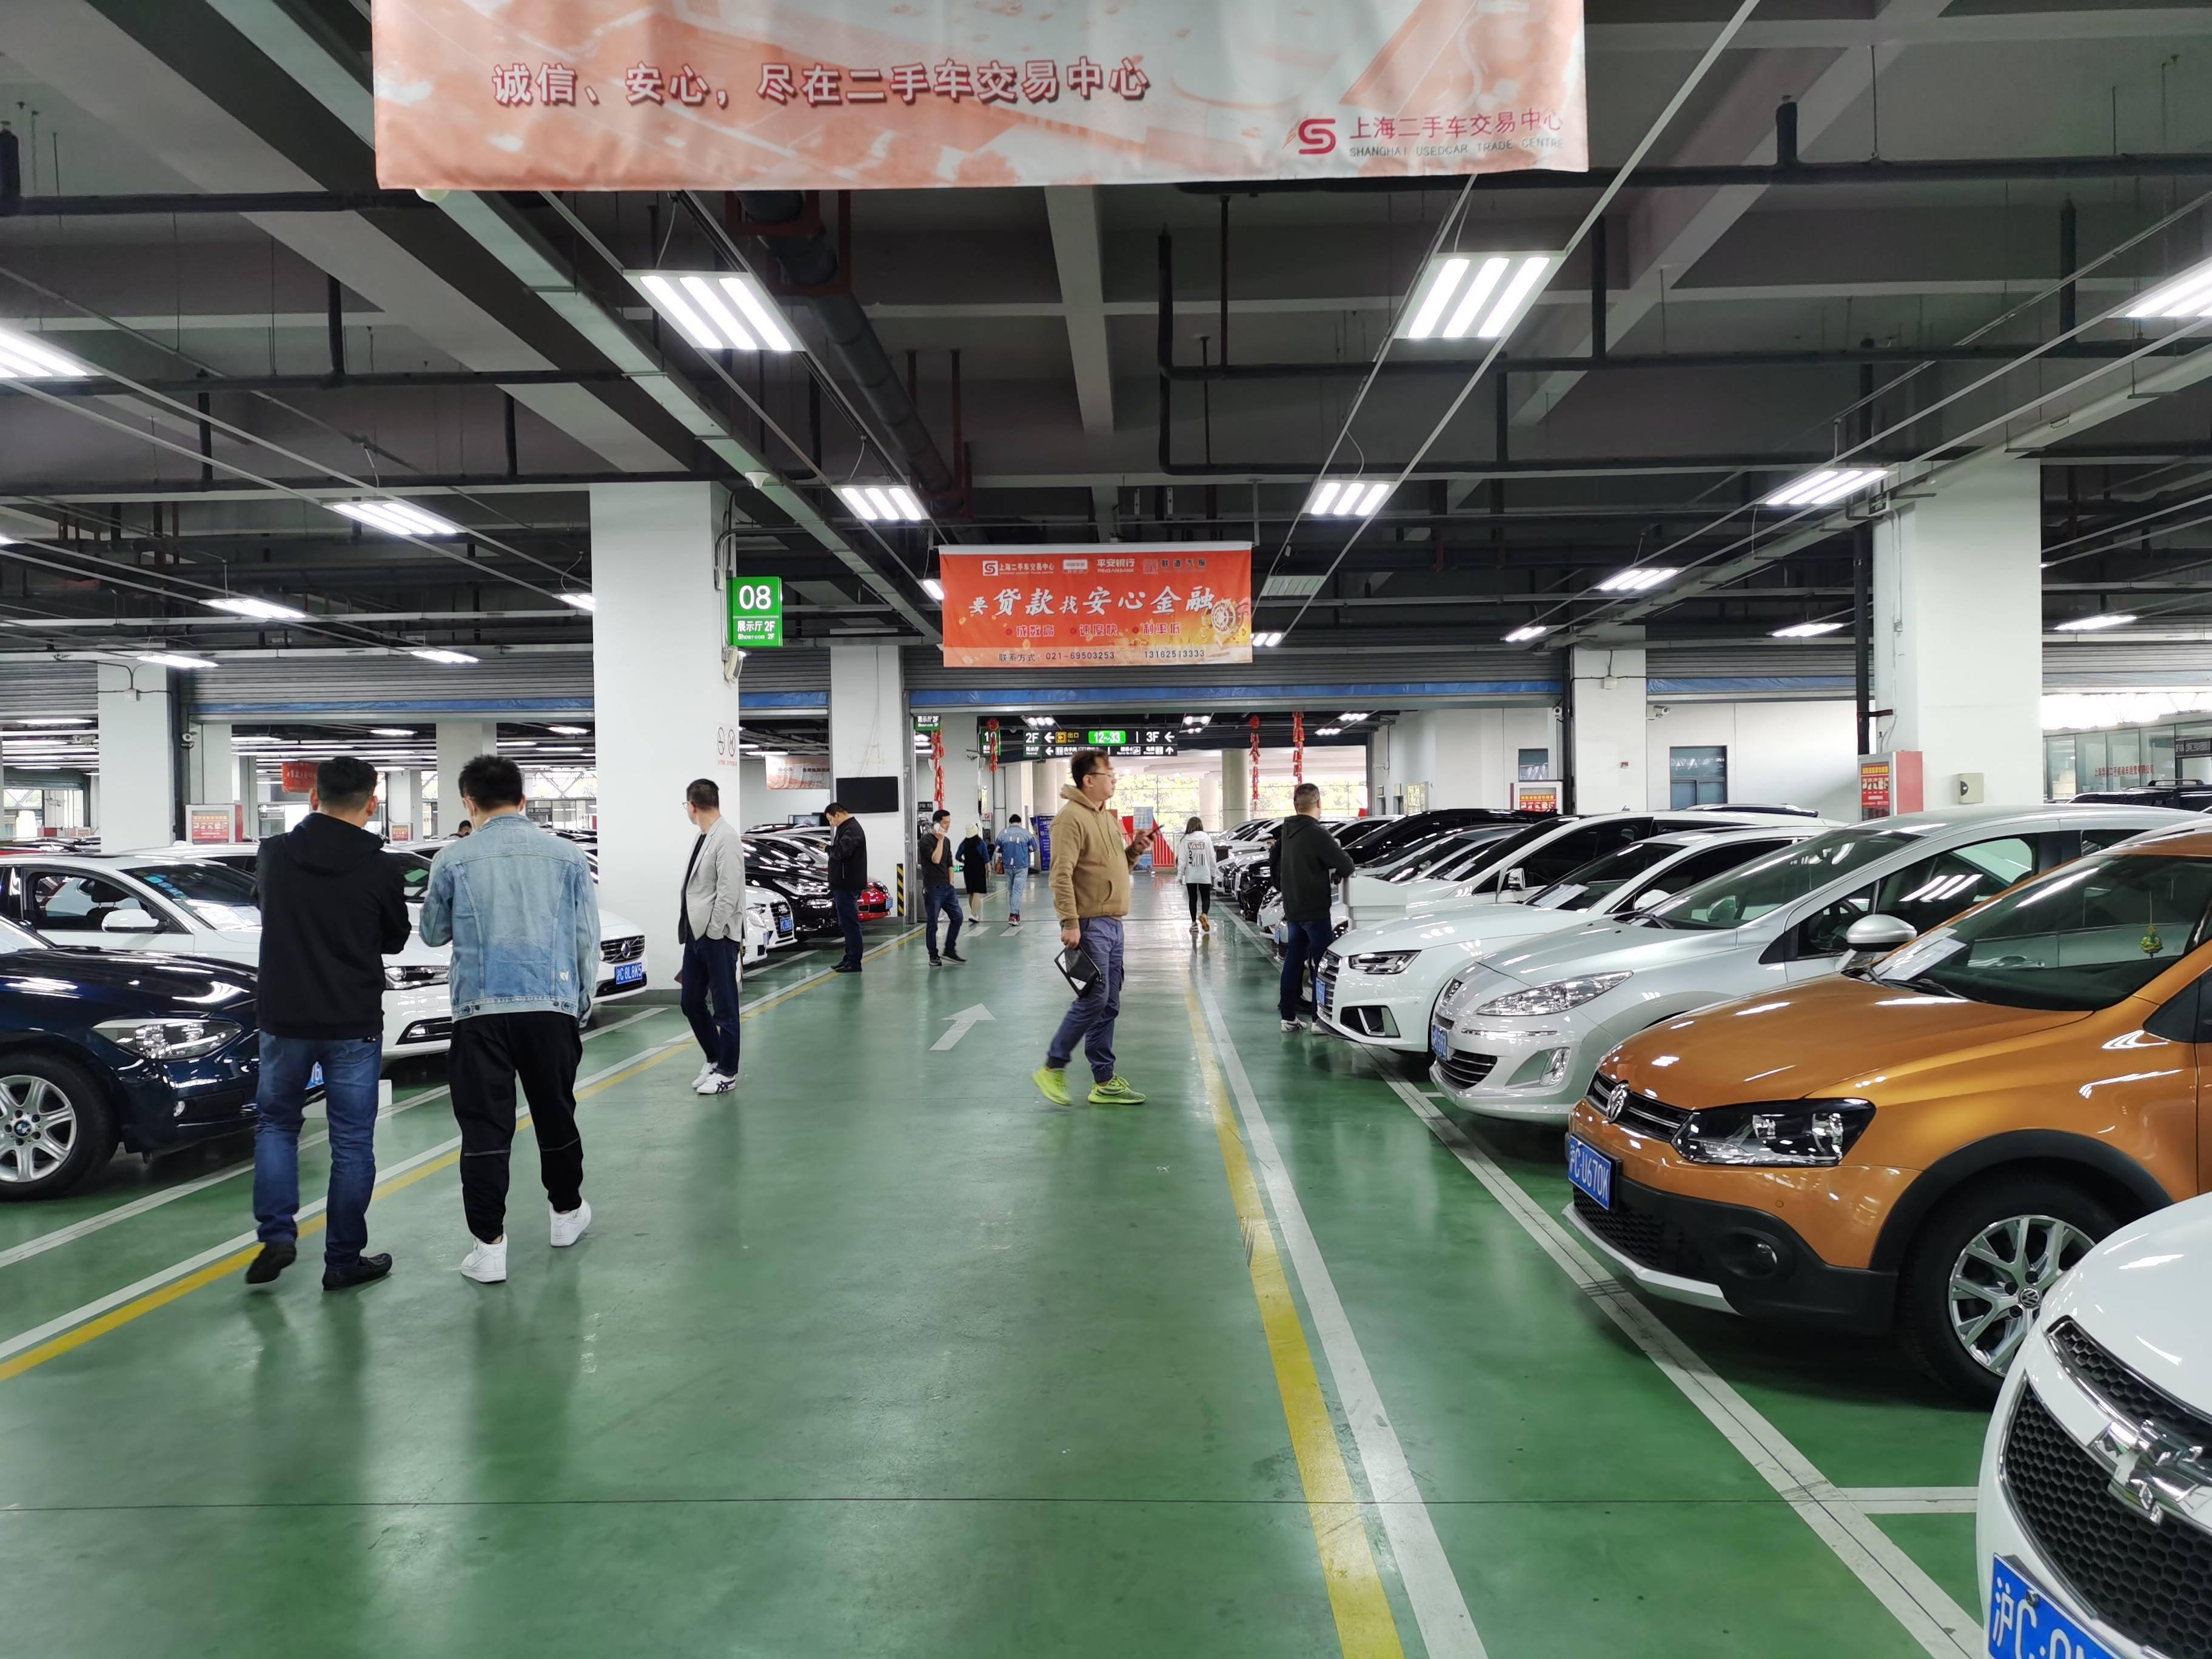 武汉收车|武汉二手车收购|武汉收二手车电话|武汉高价收车|武汉二手车市场|武汉汽车评估